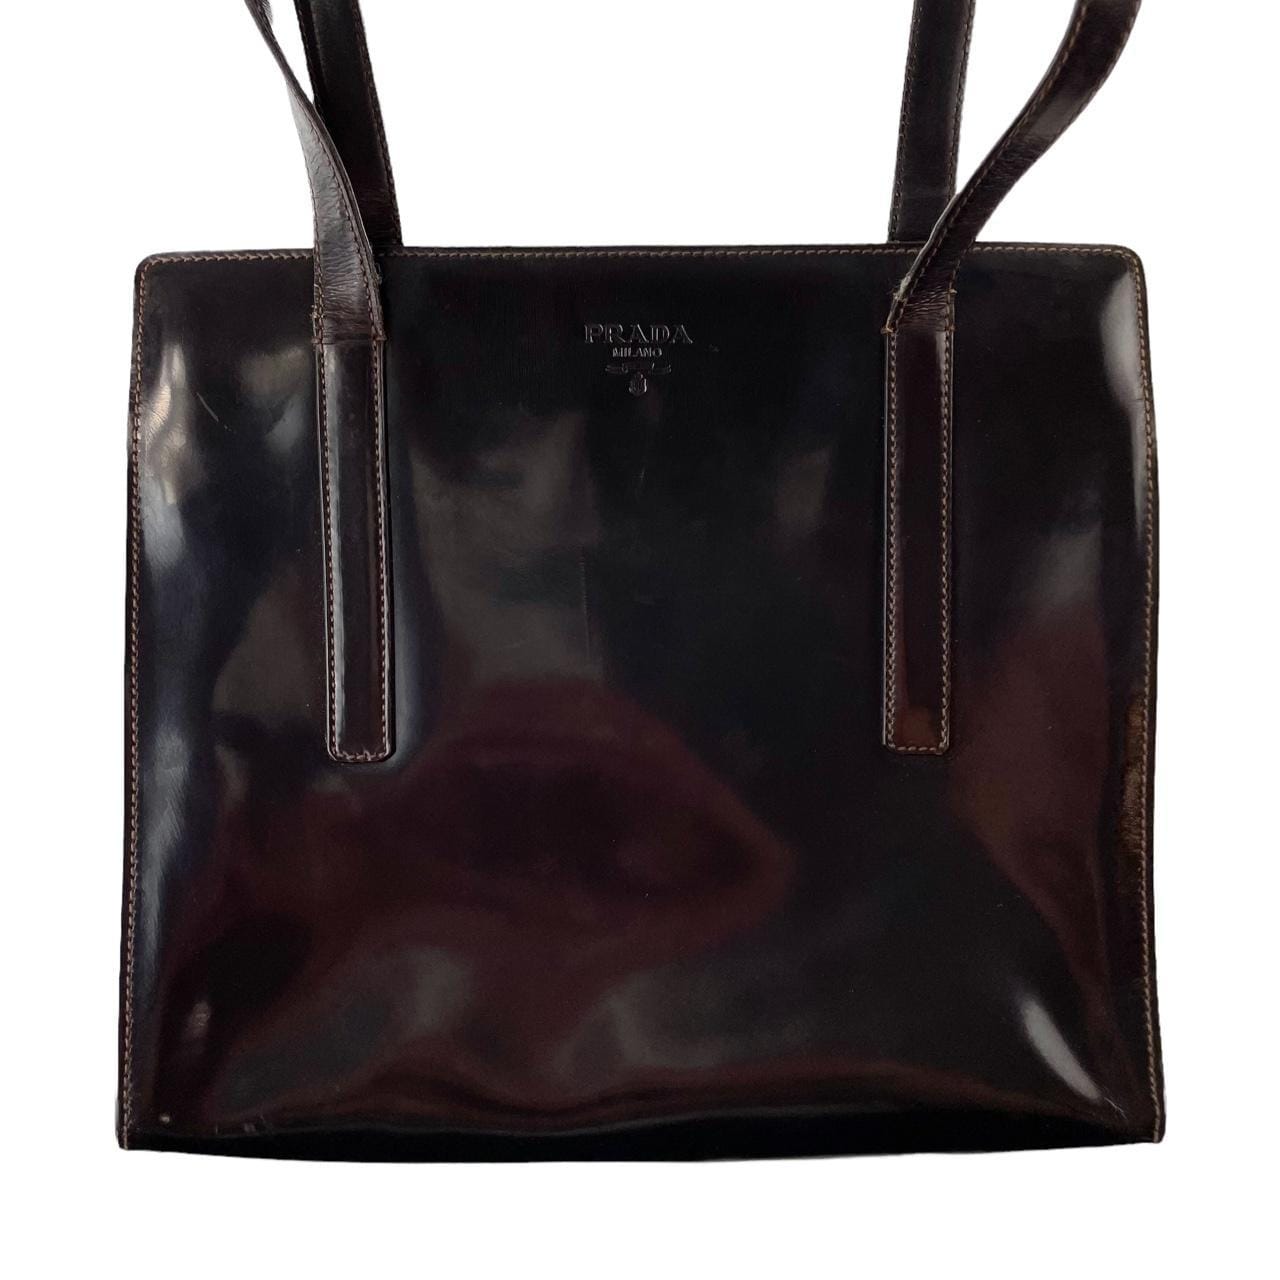 Vintage Prada leather shoulder bag - second wave vintage store